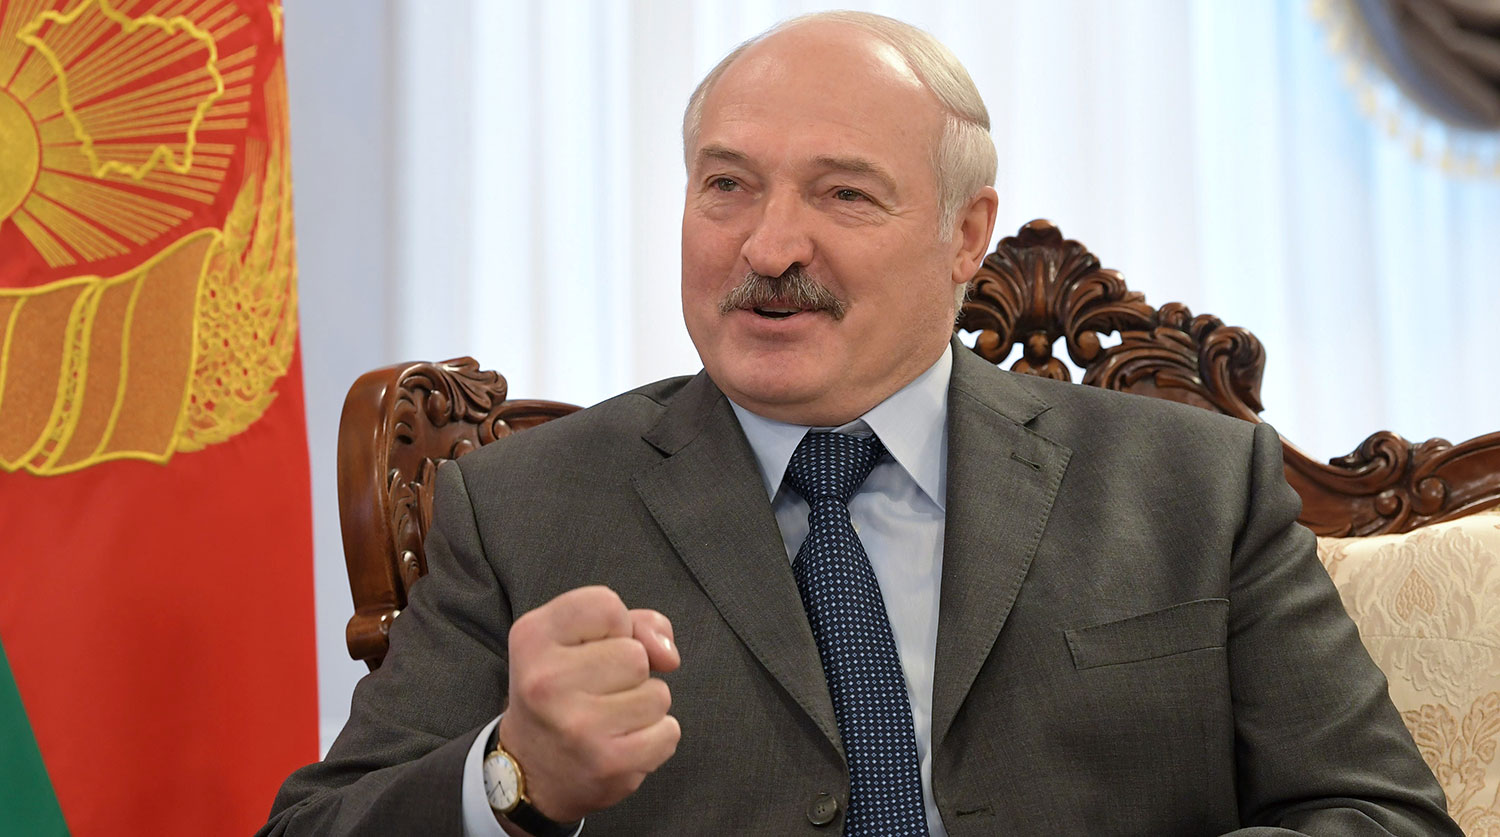 Лукашенко рассказал анекдот о коронавирусе и Жириновском